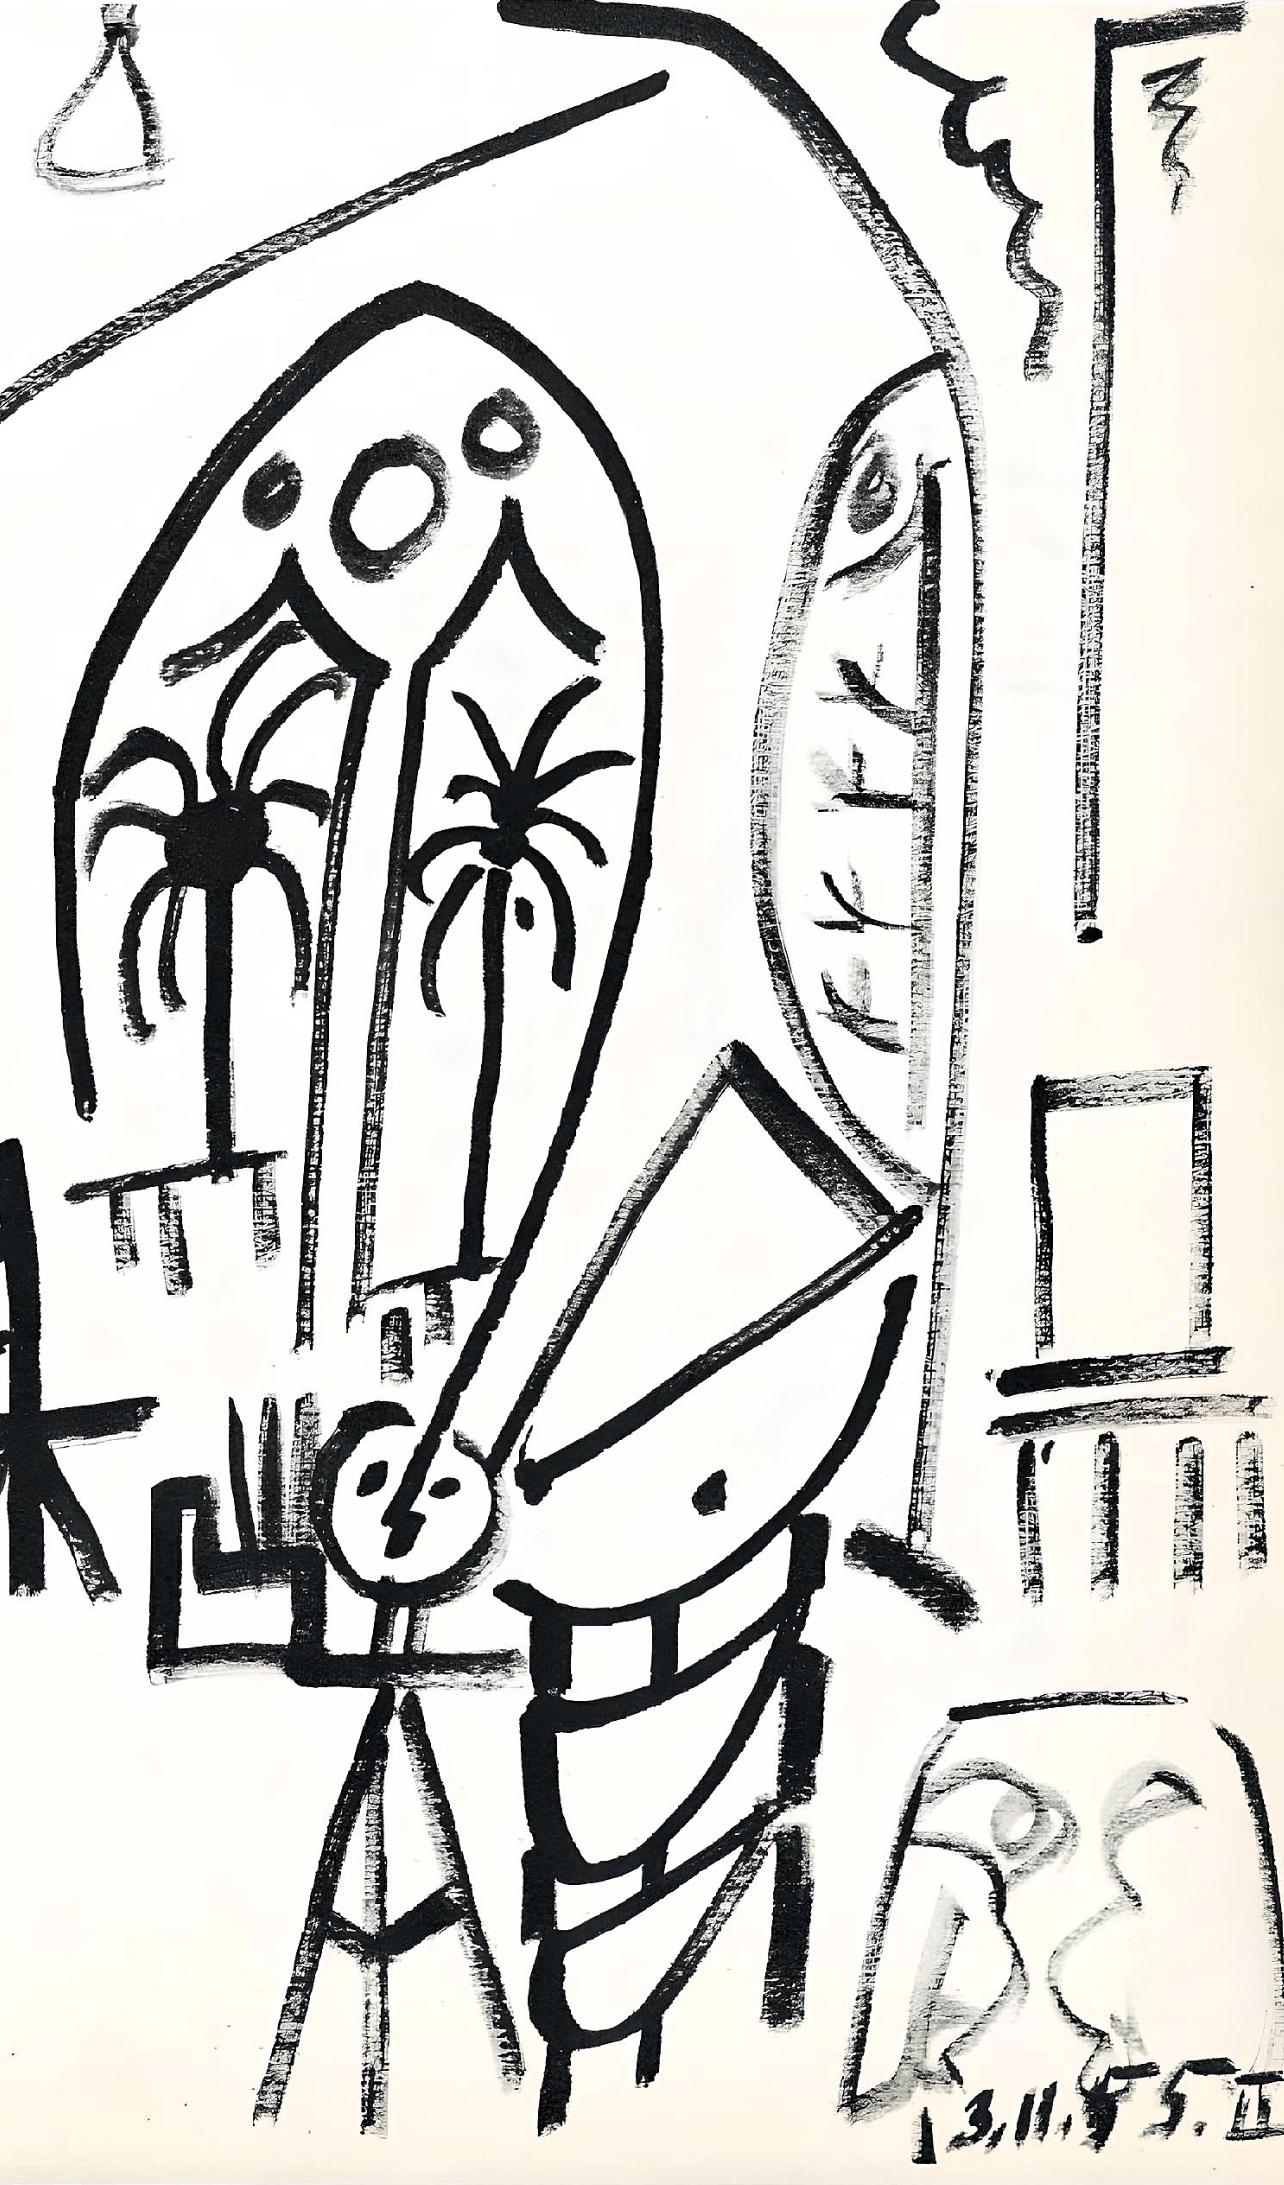 Picasso, 13.11.55, Carnet de la Californie (Cramer 101) (after) - Print by Pablo Picasso